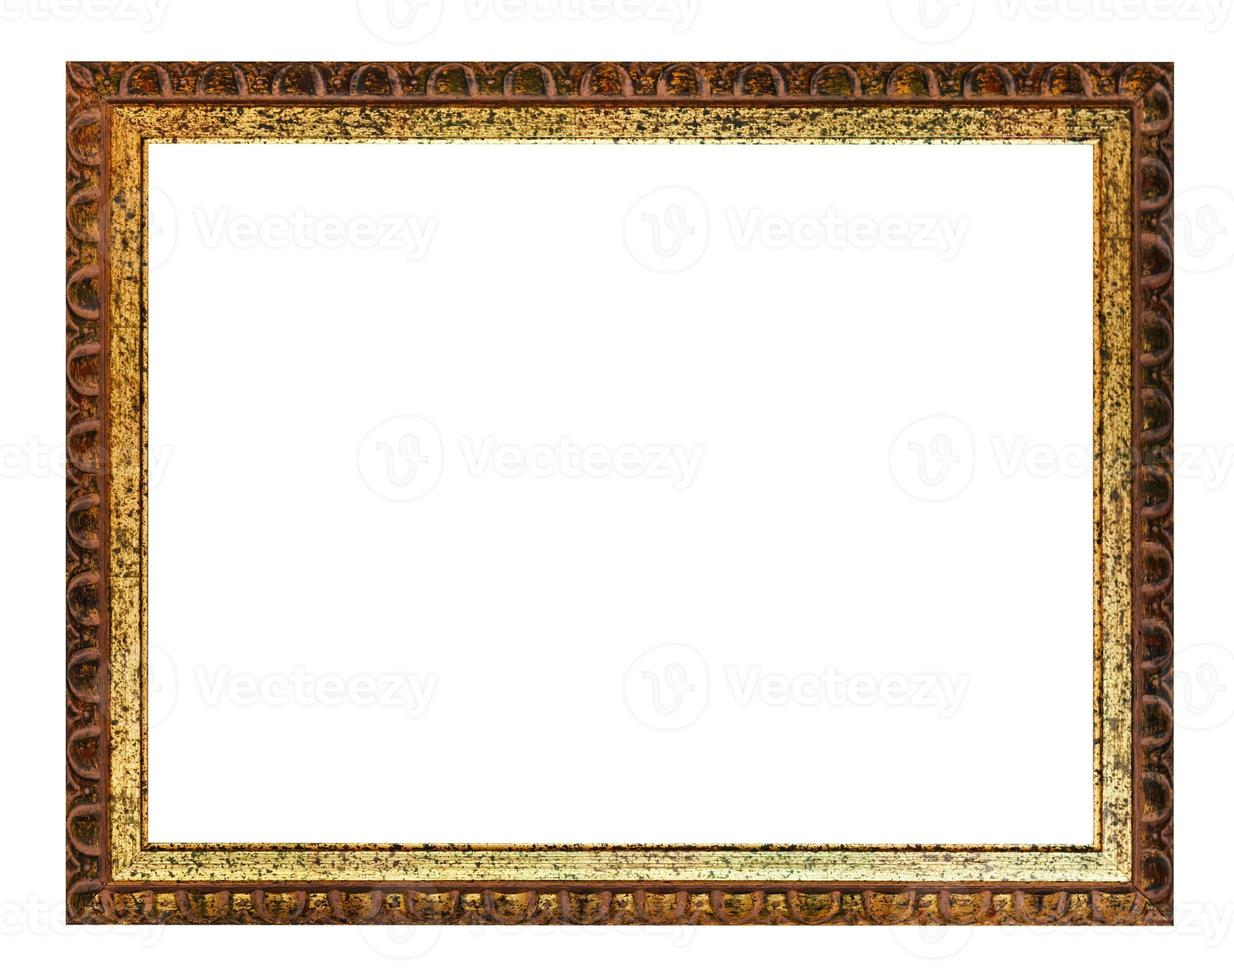 porta-retrato de madeira dourada e marrom esculpida envelhecida foto